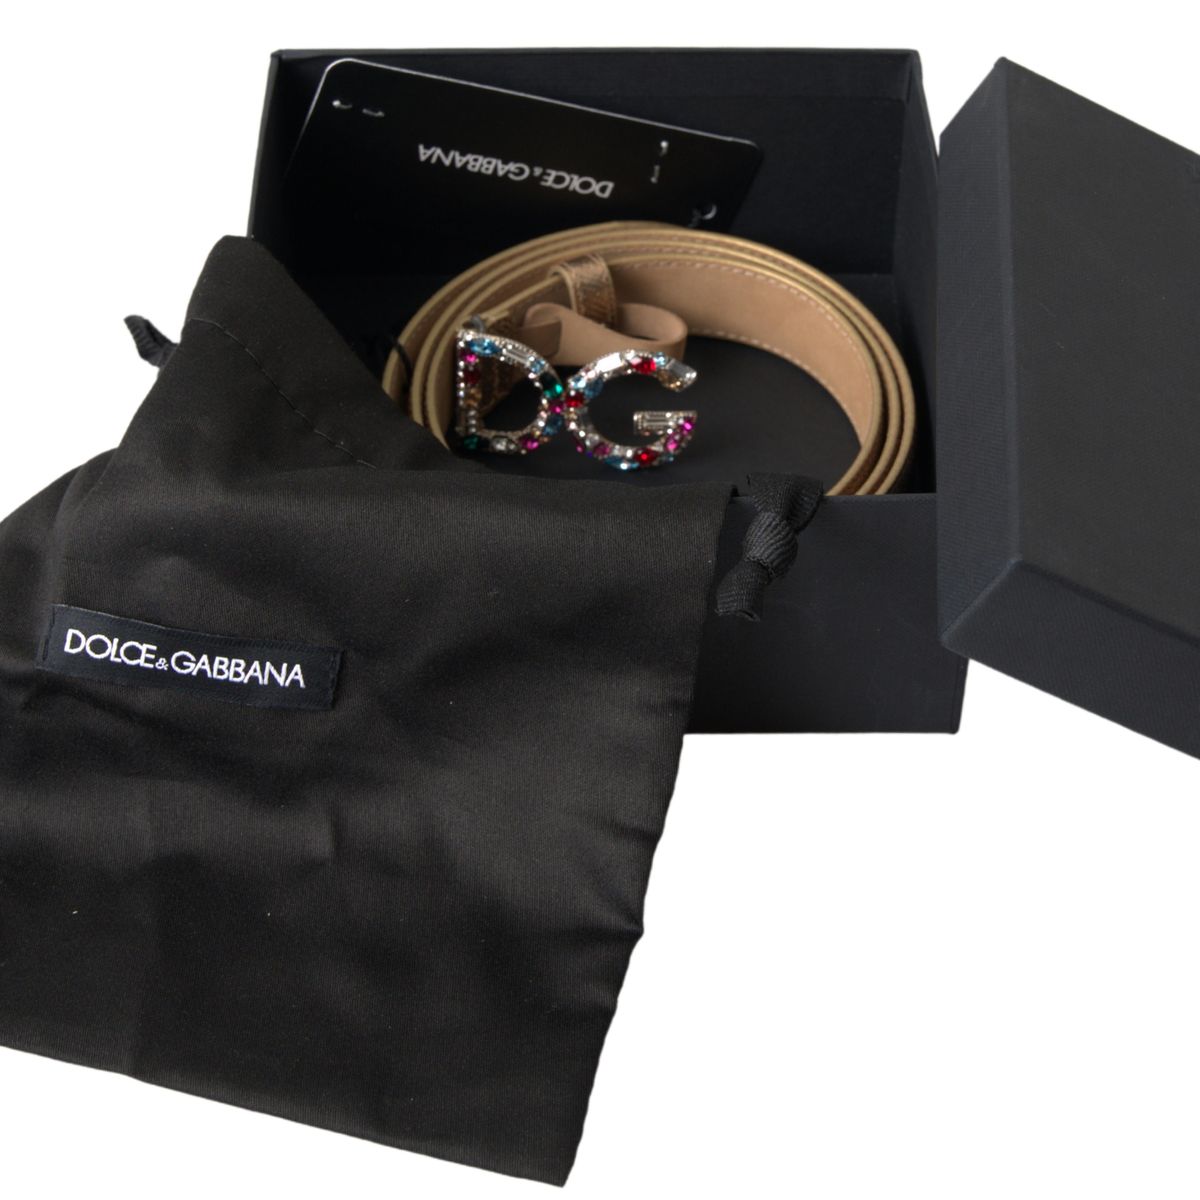 Dolce & Gabbana Gold Leather Crystal-Embellished Women's Belt